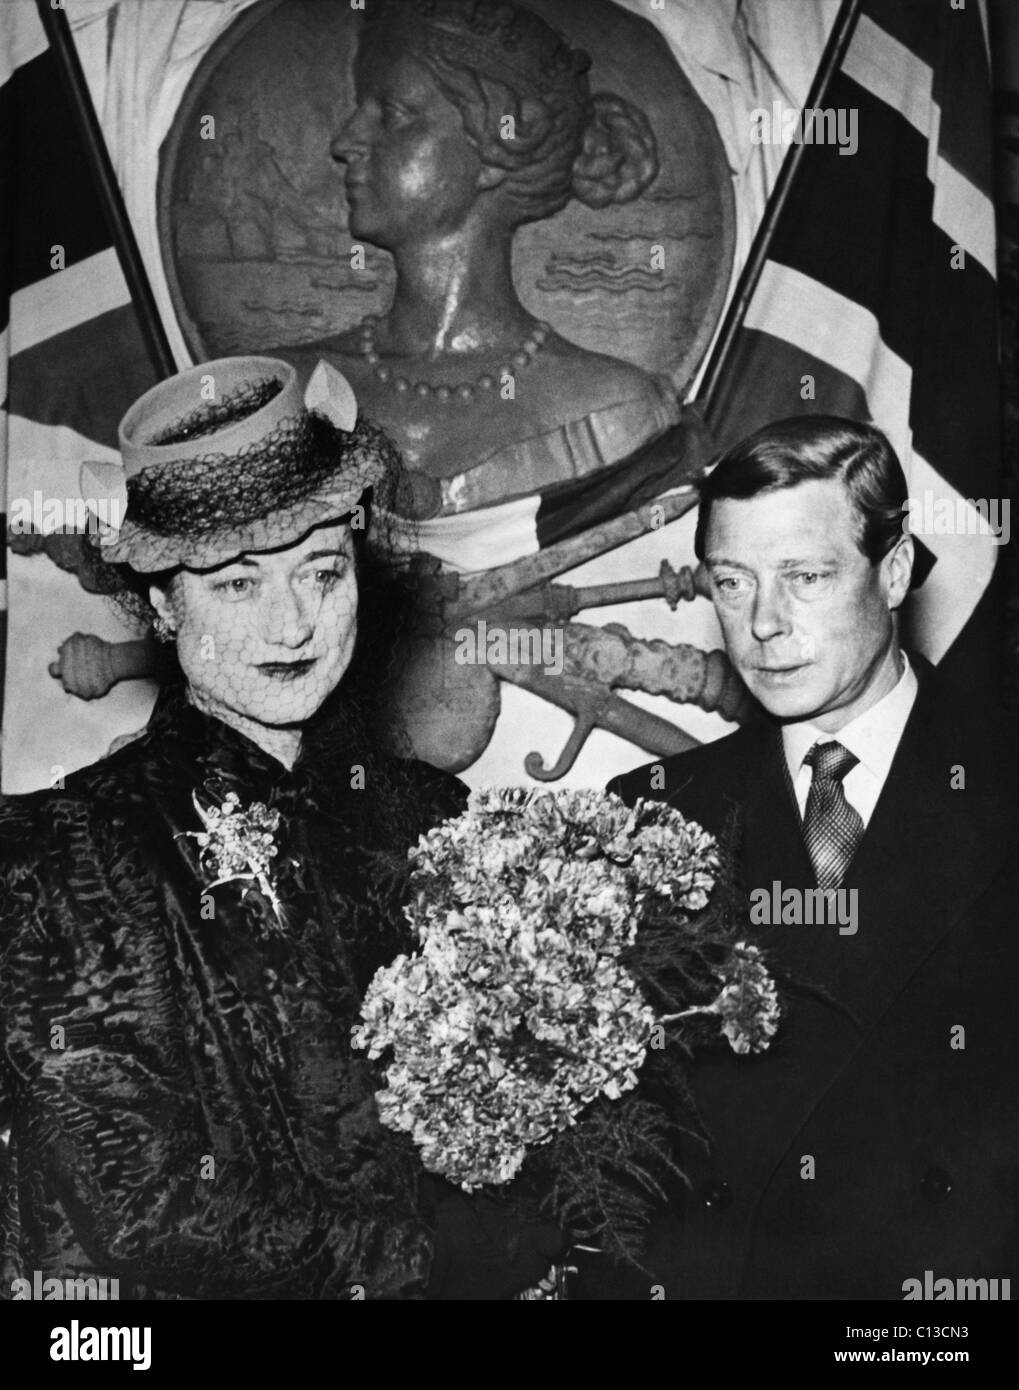 La duchessa di Windsor Wallis Simpson e Prince Edward, duca di Windsor, risalente alla fine degli anni trenta. Foto Stock